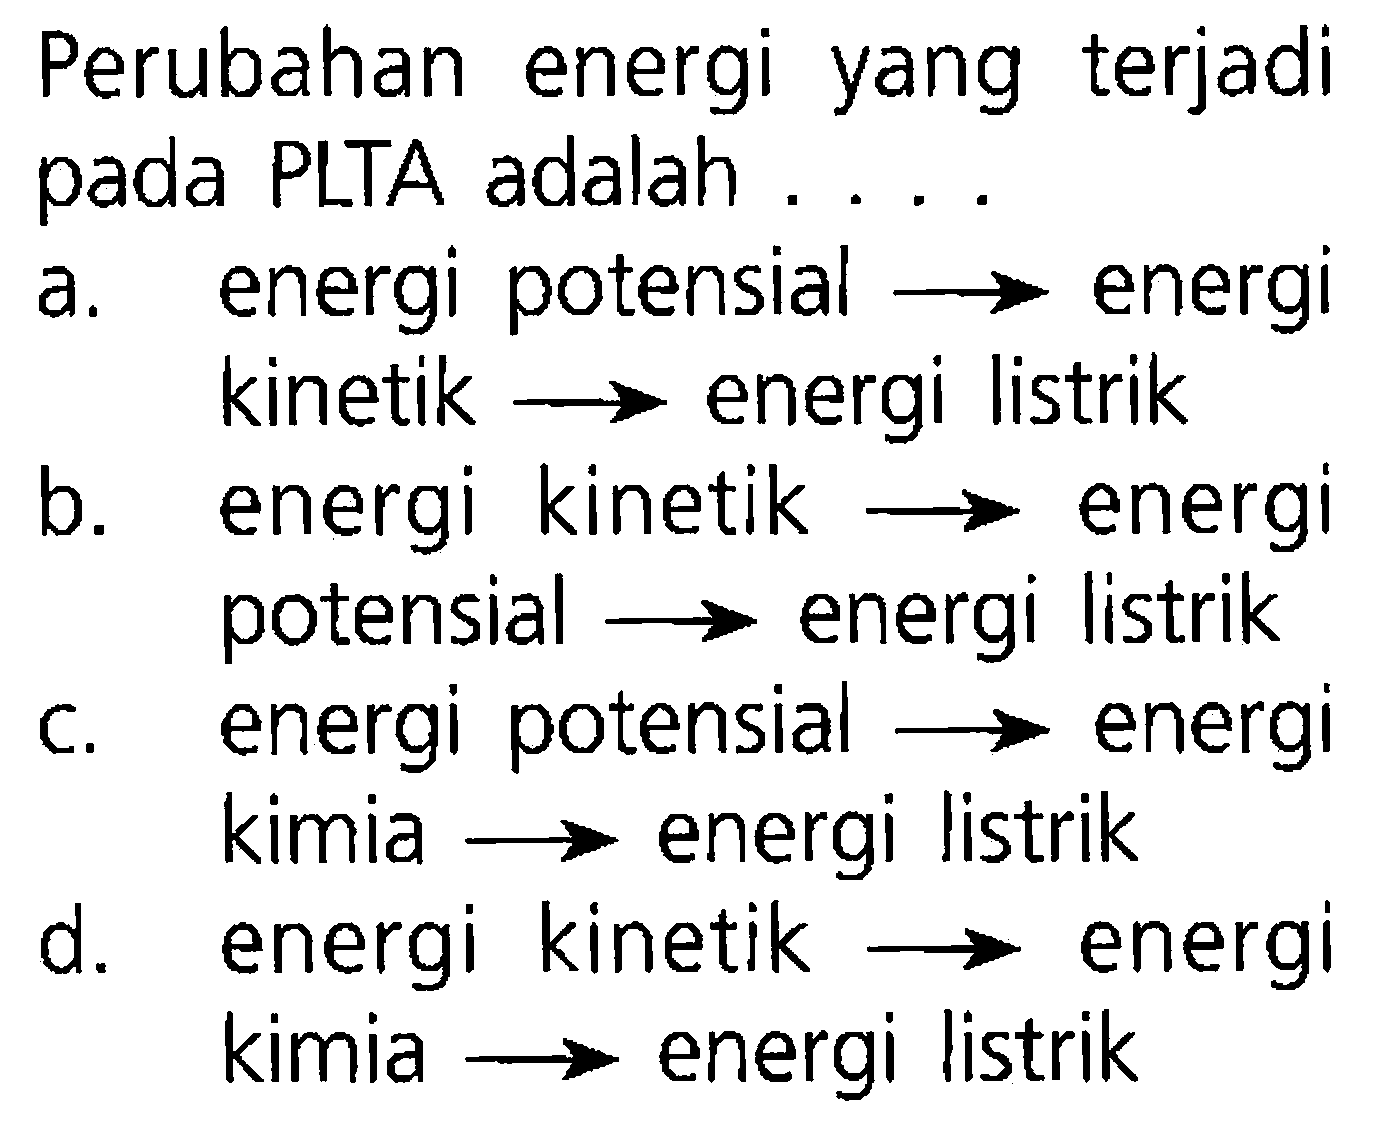 Perubahan energi yang terjadi pada PLTA adalah ....